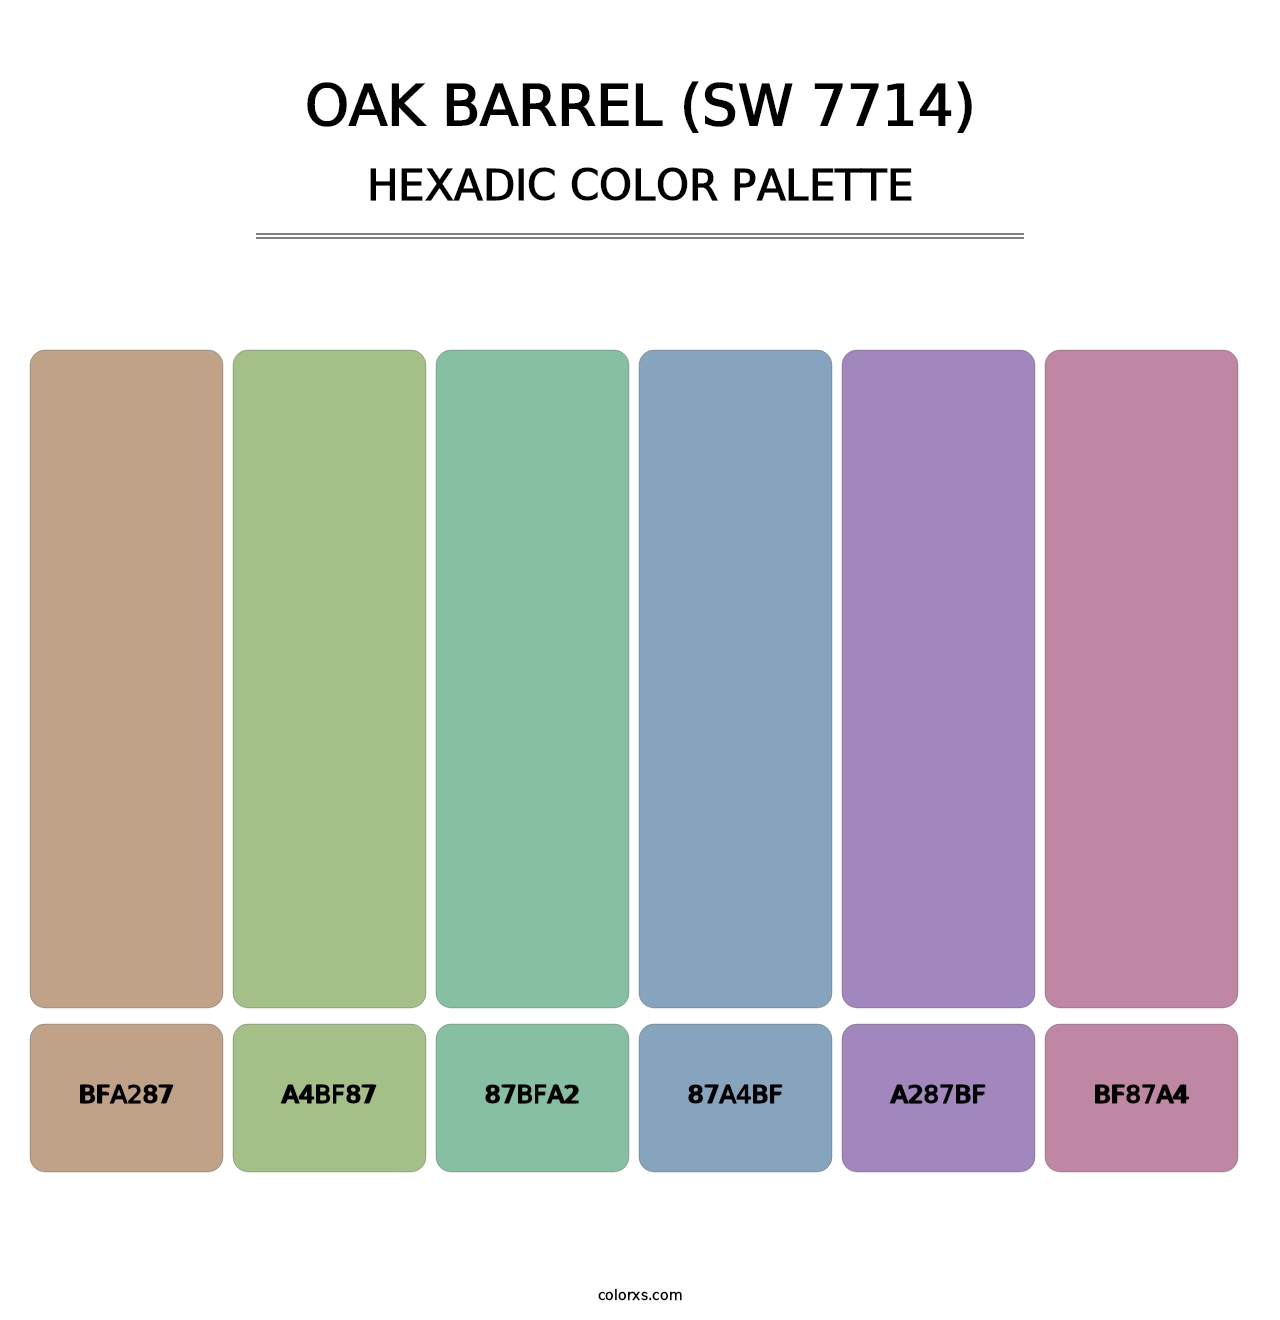 Oak Barrel (SW 7714) - Hexadic Color Palette